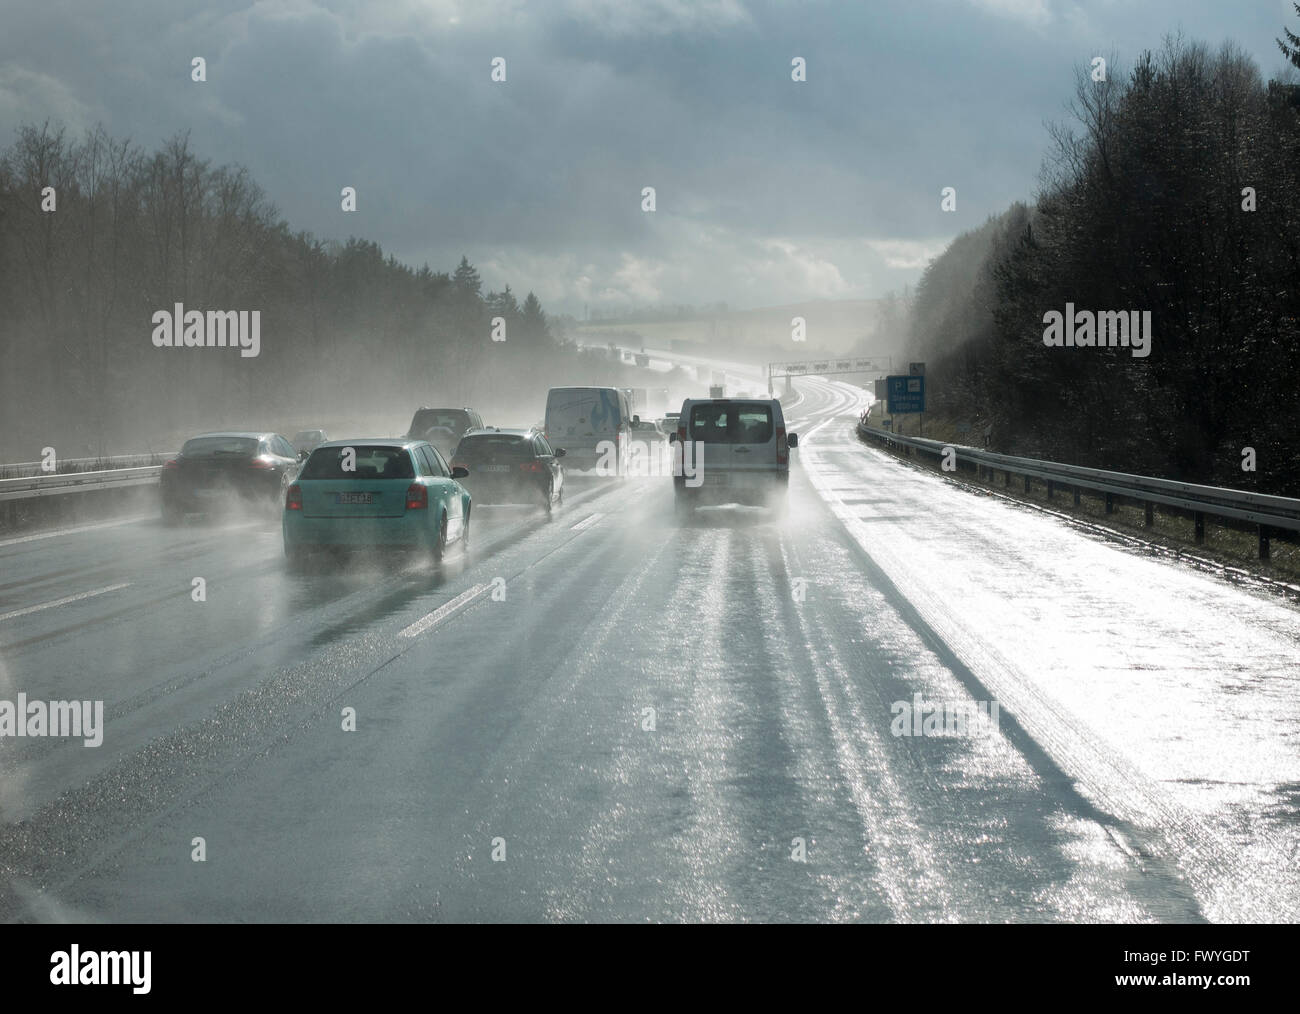 Dépasser les voitures sous la pluie, la mauvaise visibilité, l'autoroute A9, Thuringe, Allemagne Banque D'Images